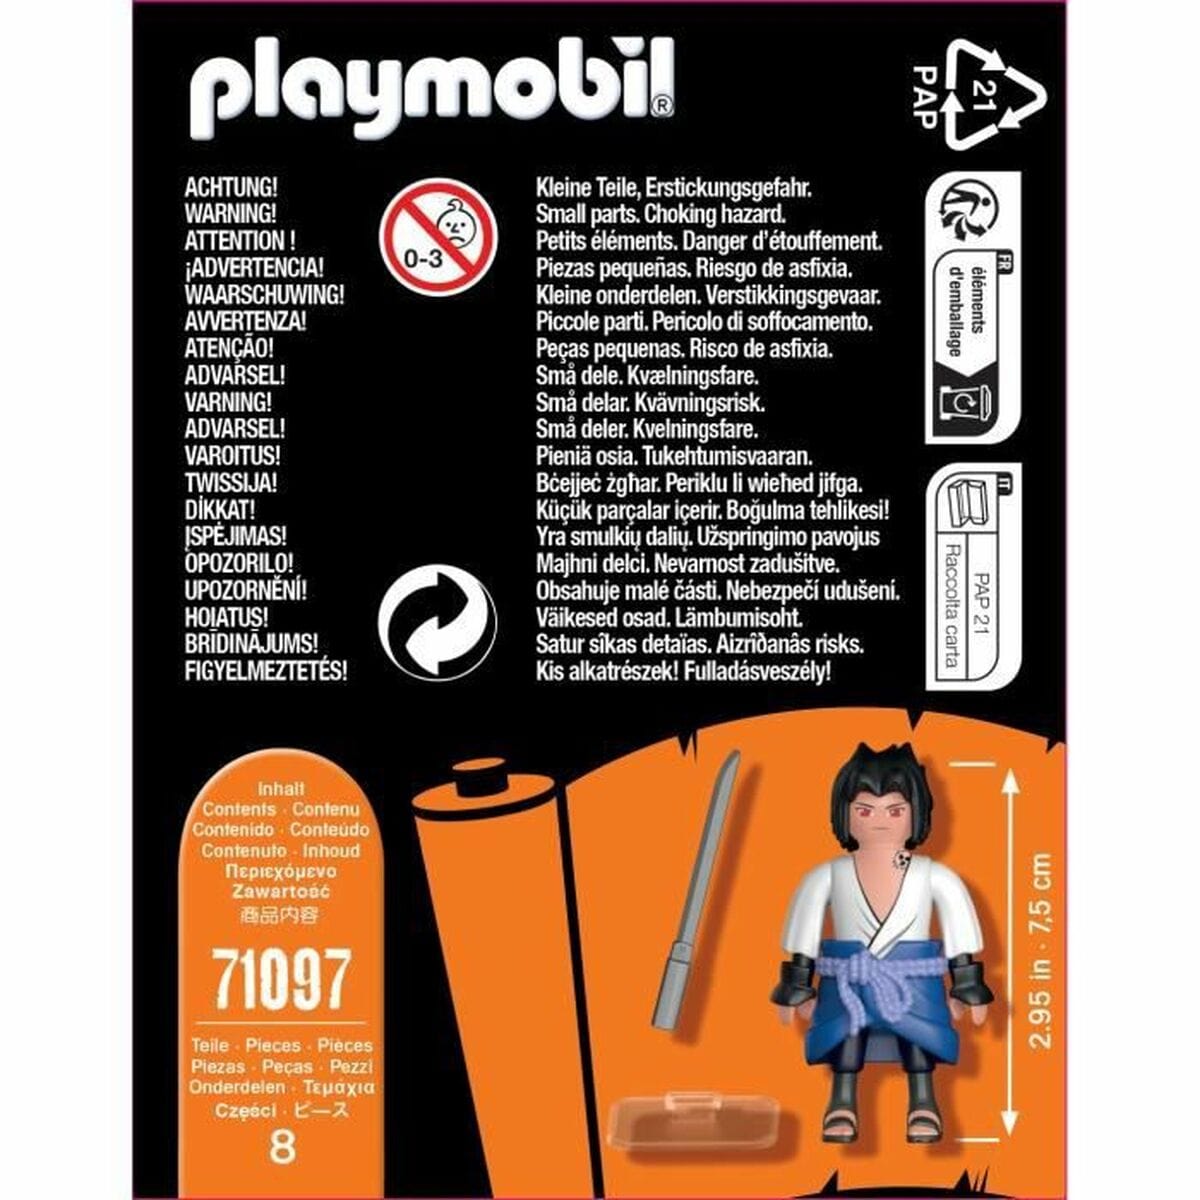 Playmobil Spielzeug | Kostüme > Spielzeug und Spiele > Action-Figuren Actionfiguren Playmobil Kisame